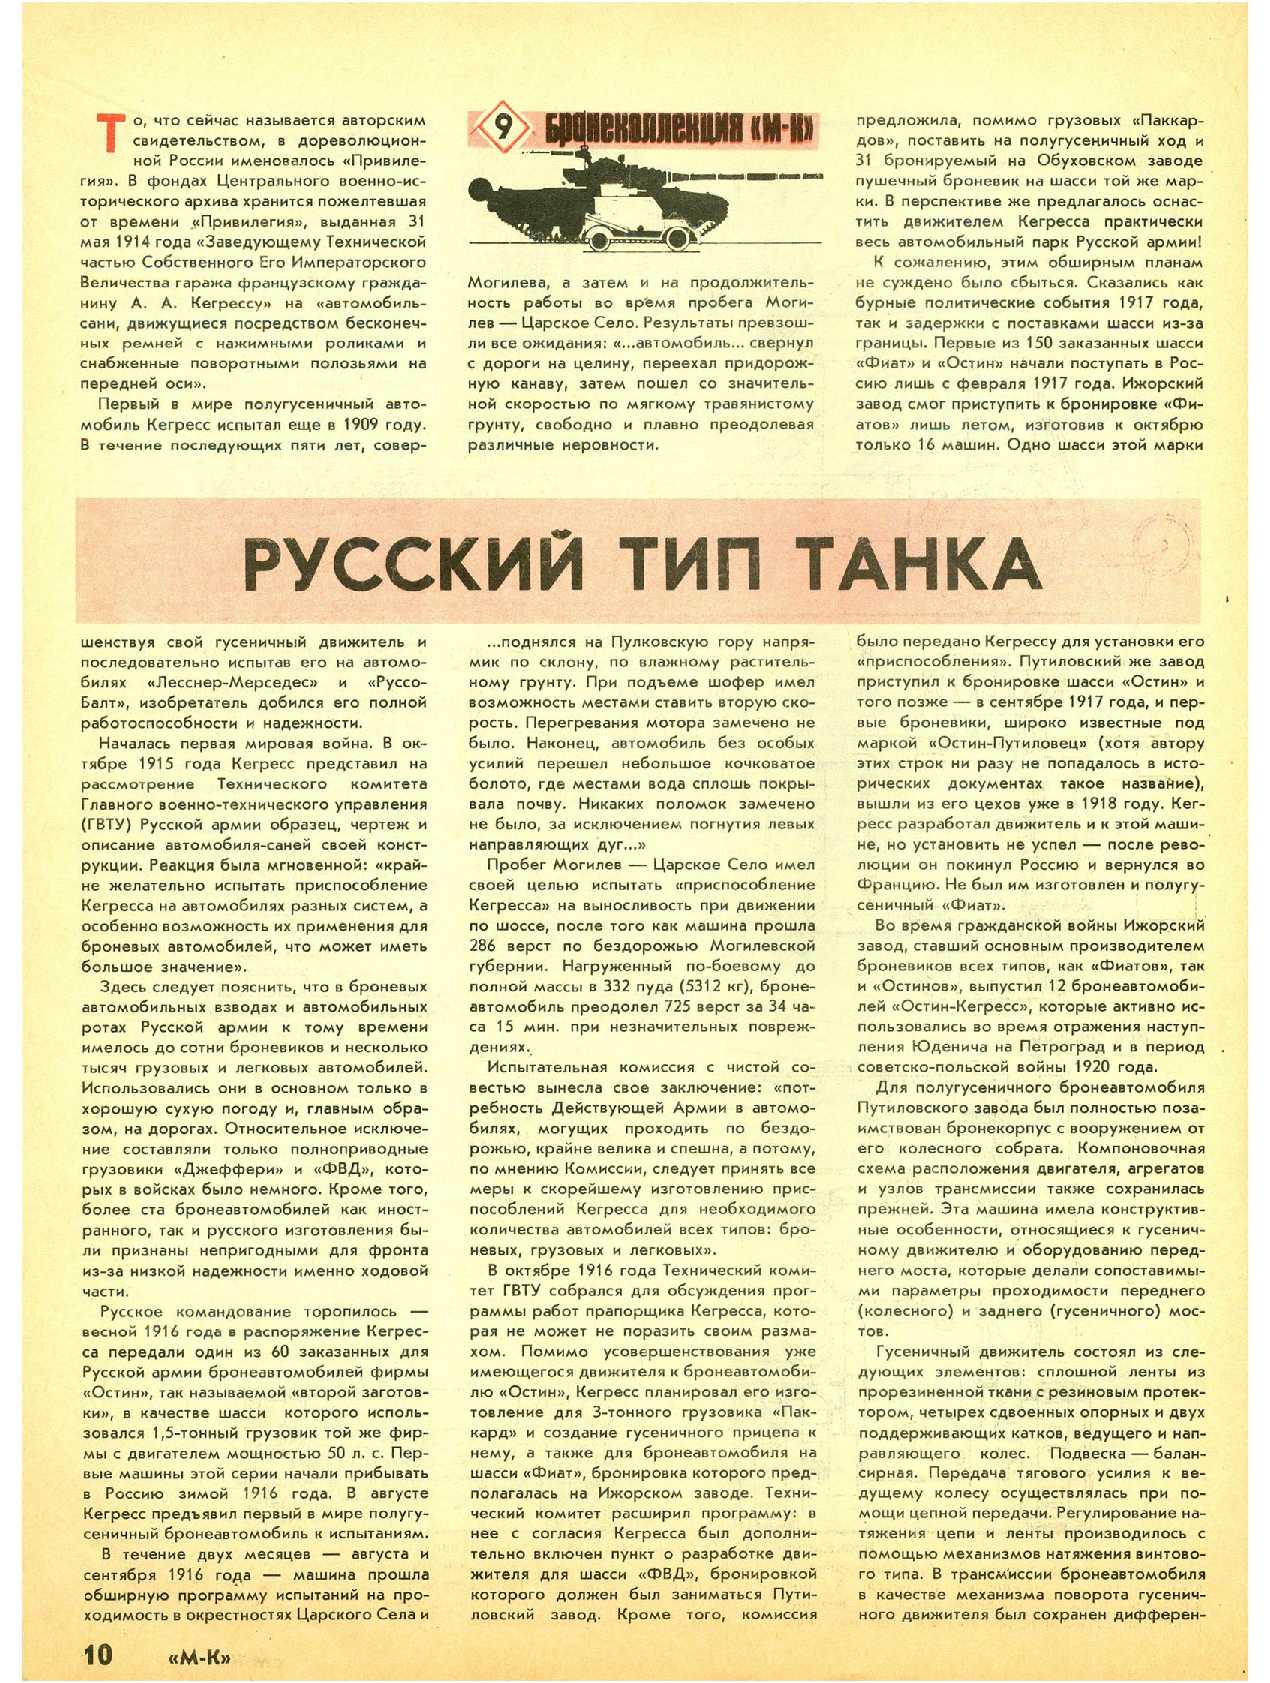 МК 1-2, 1992, 10 c.